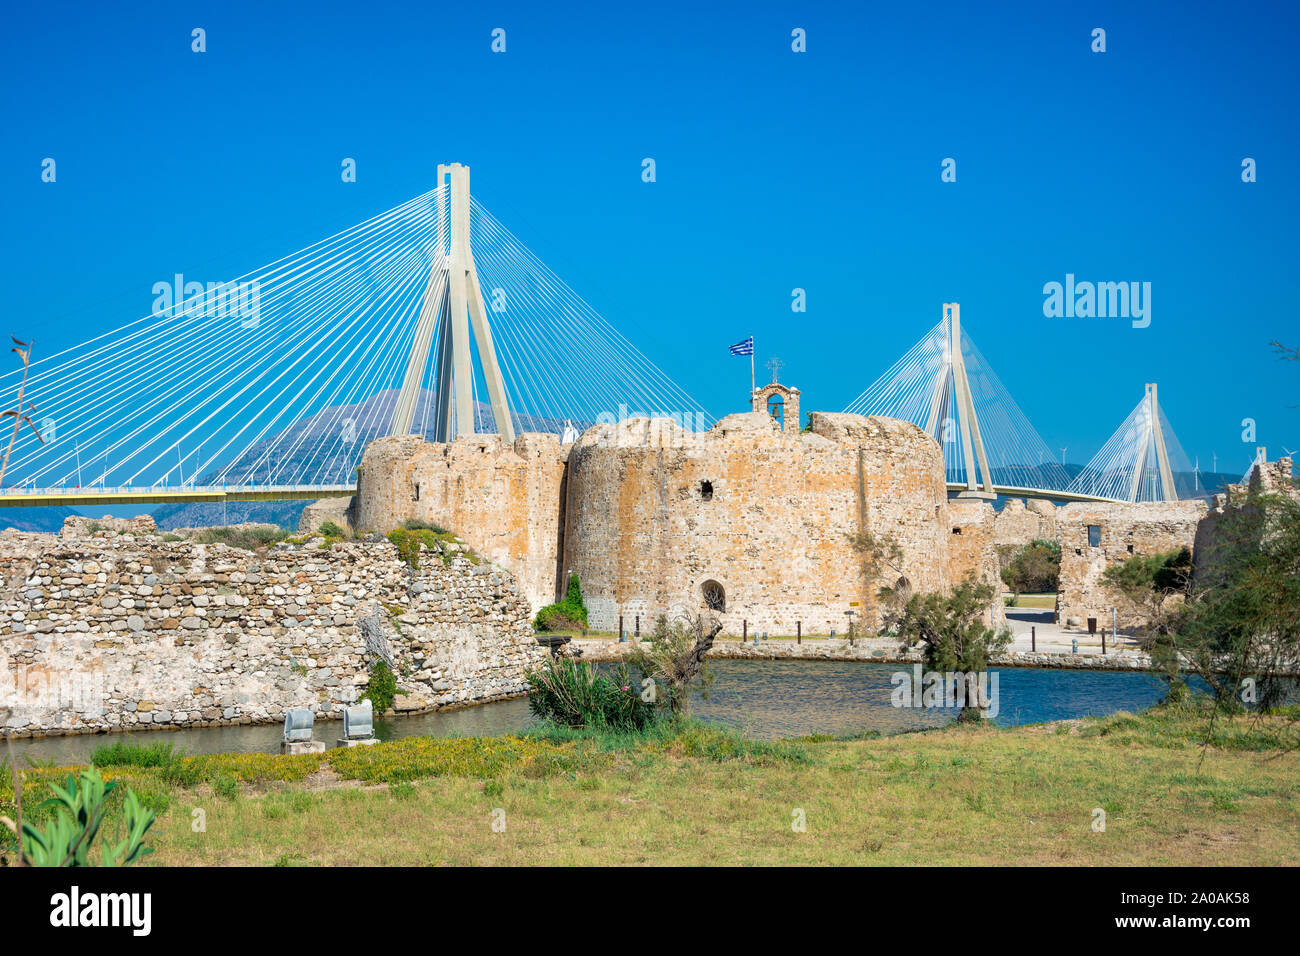 Scenic view of Venecian fortress Rio castle in Greece, near Rio-Antirio Bridge crossing Corinth Gulf strait, Peloponnese, Greece Stock Photo